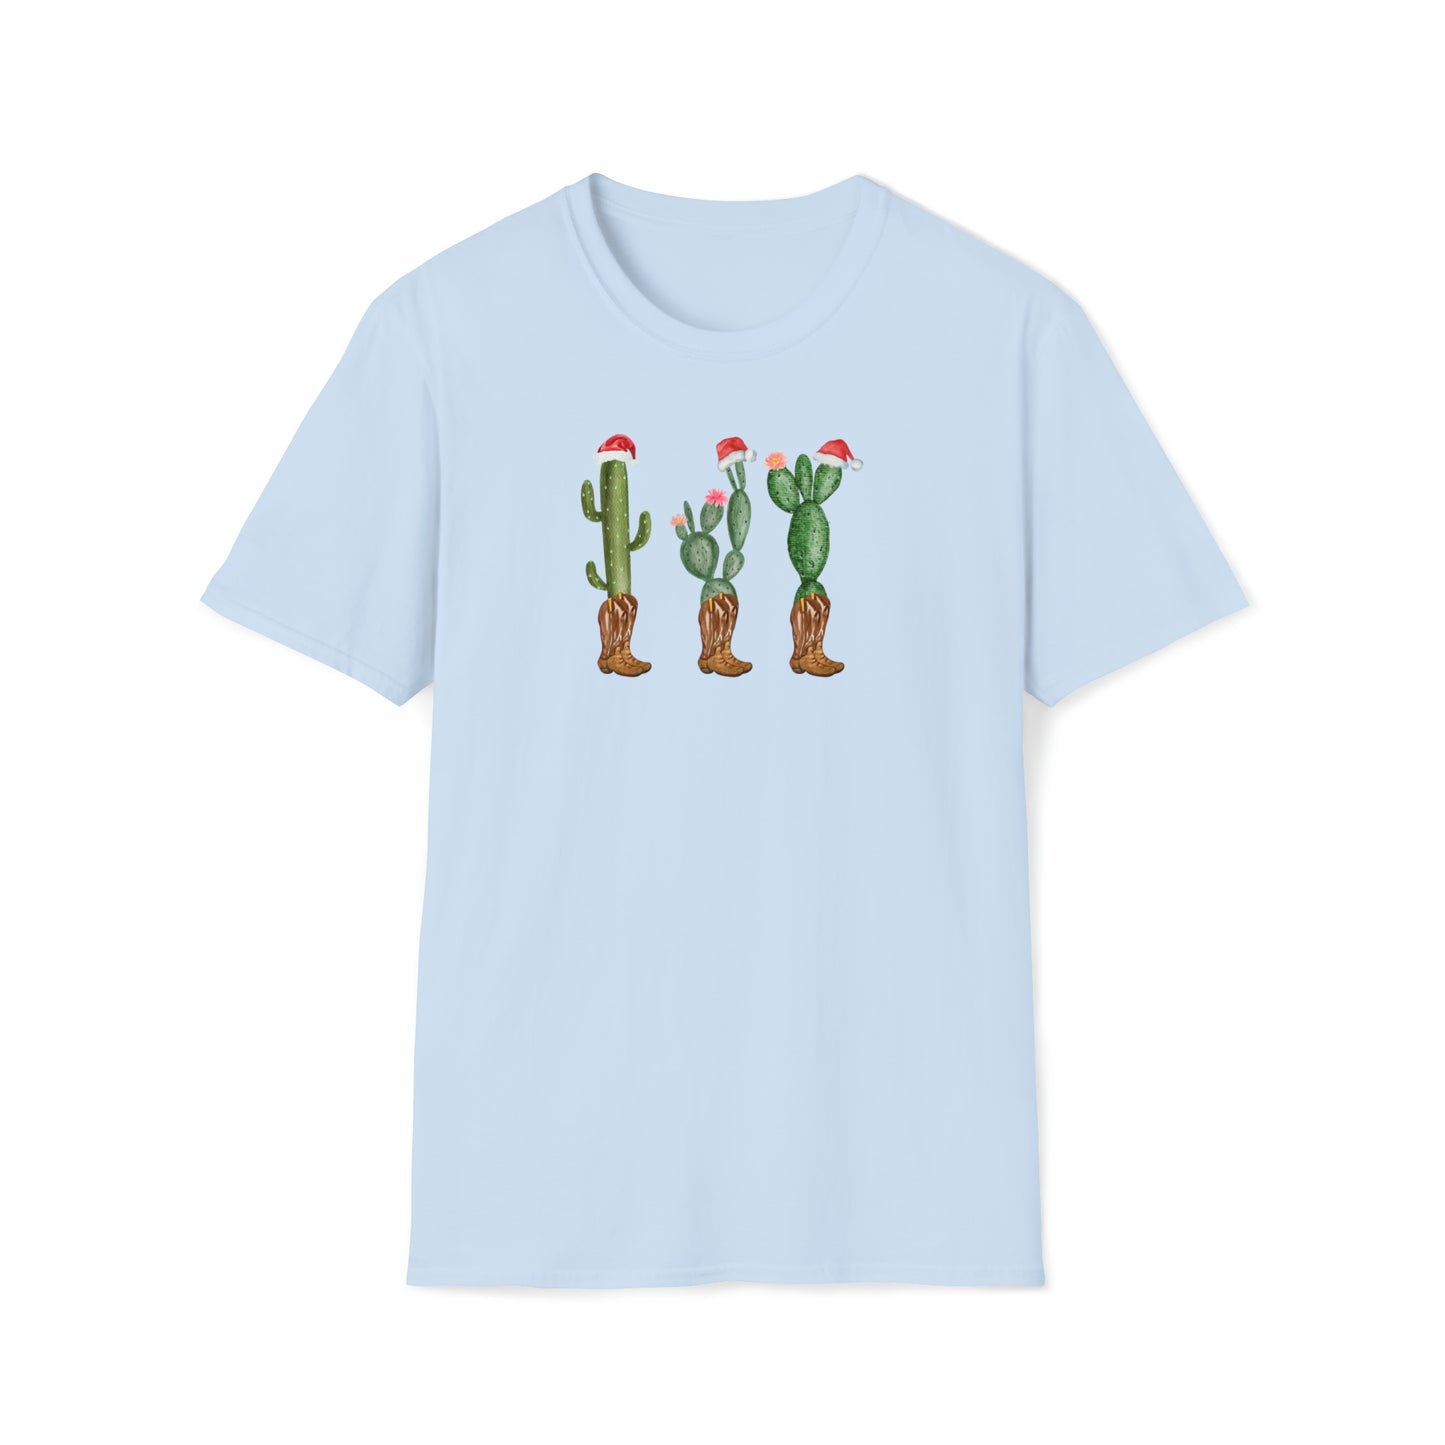 Christmas T-Shirt - Country Cactus Christmas!